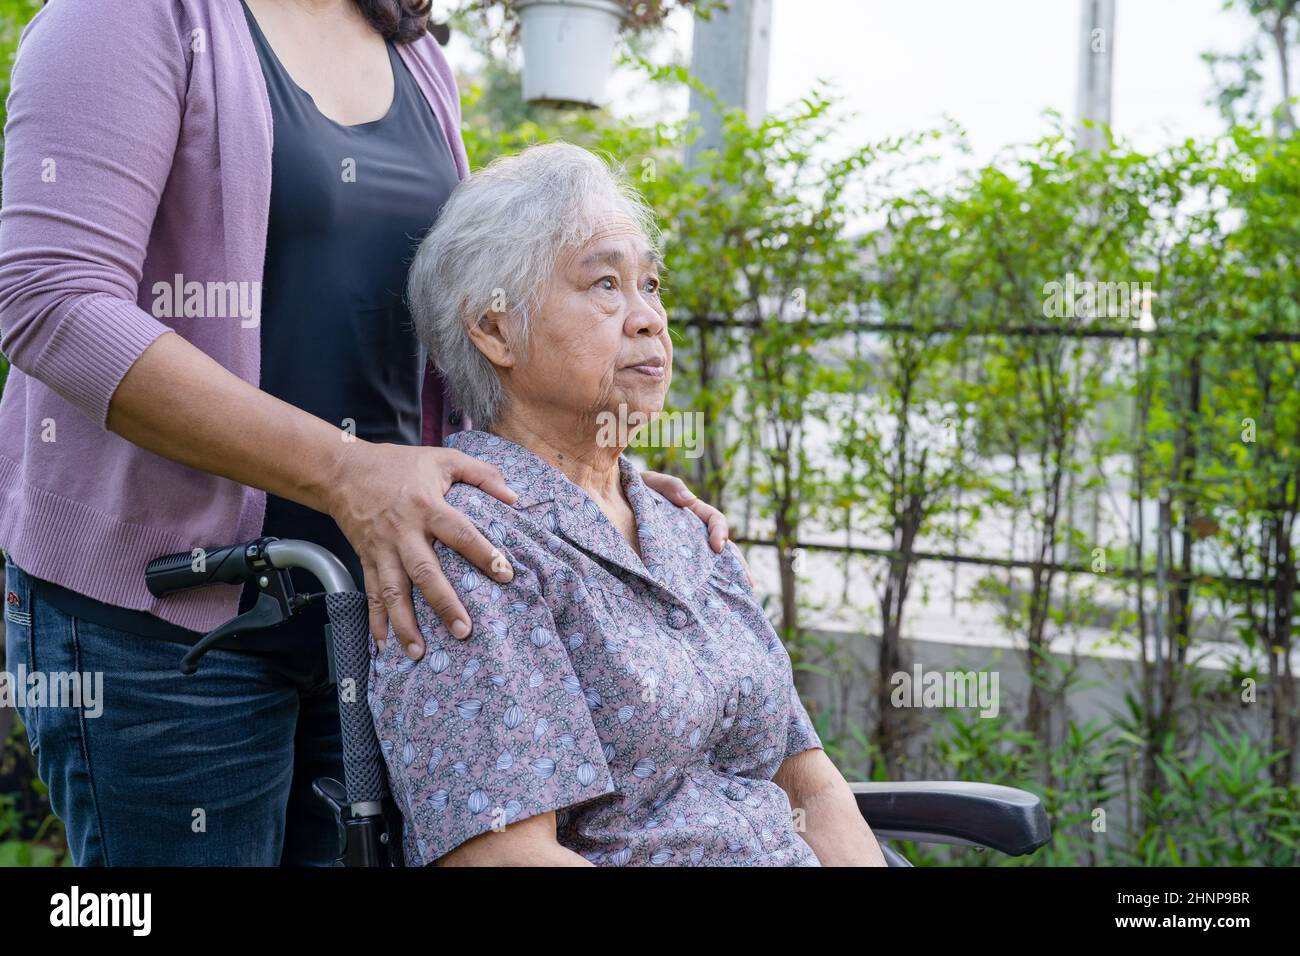 Pflegerin Tochter Hilfe asiatische ältere oder ältere alte Dame Frau auf elektrischen Rollstuhl im Park. Stockfoto